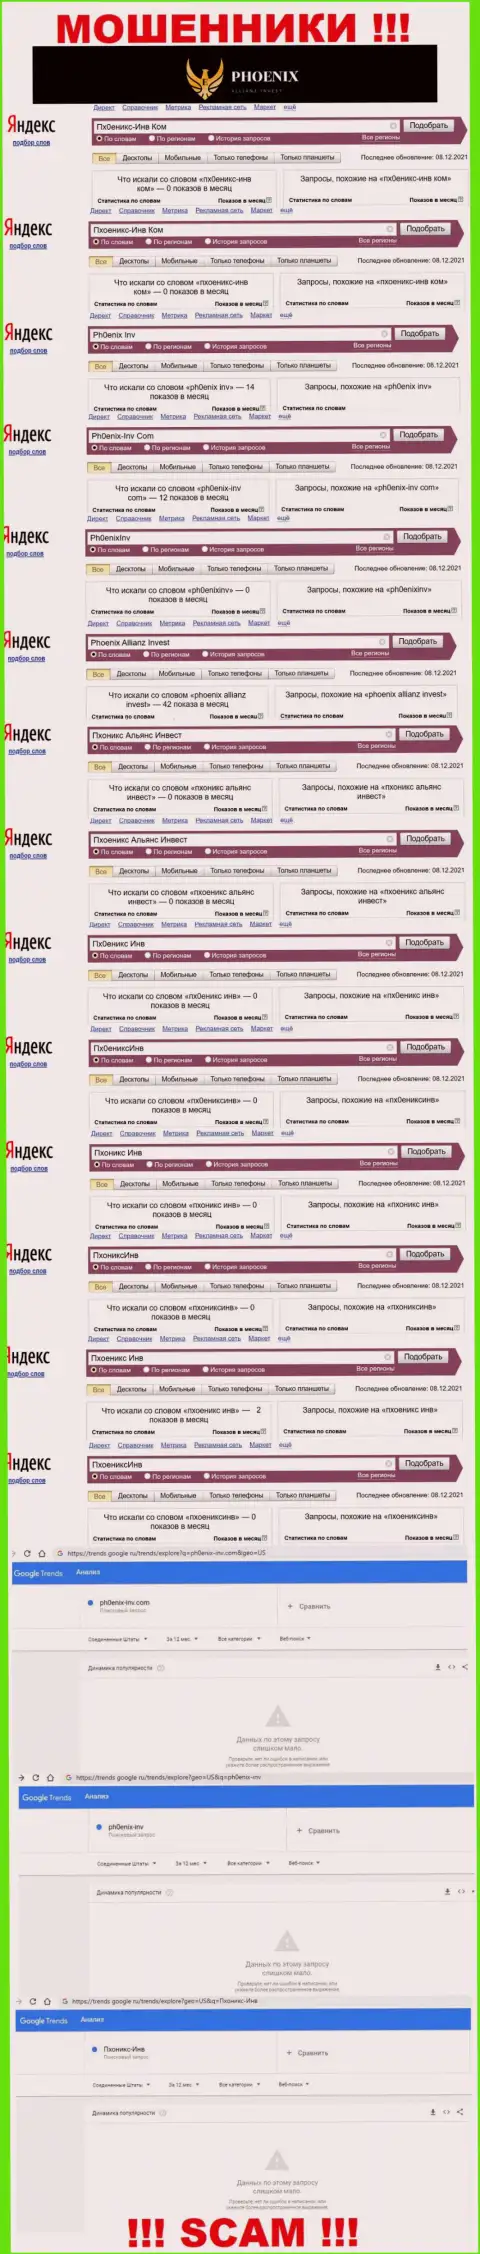 Скриншот итога online-запросов по противоправно действующей компании Пхоникс Альянс Инвест